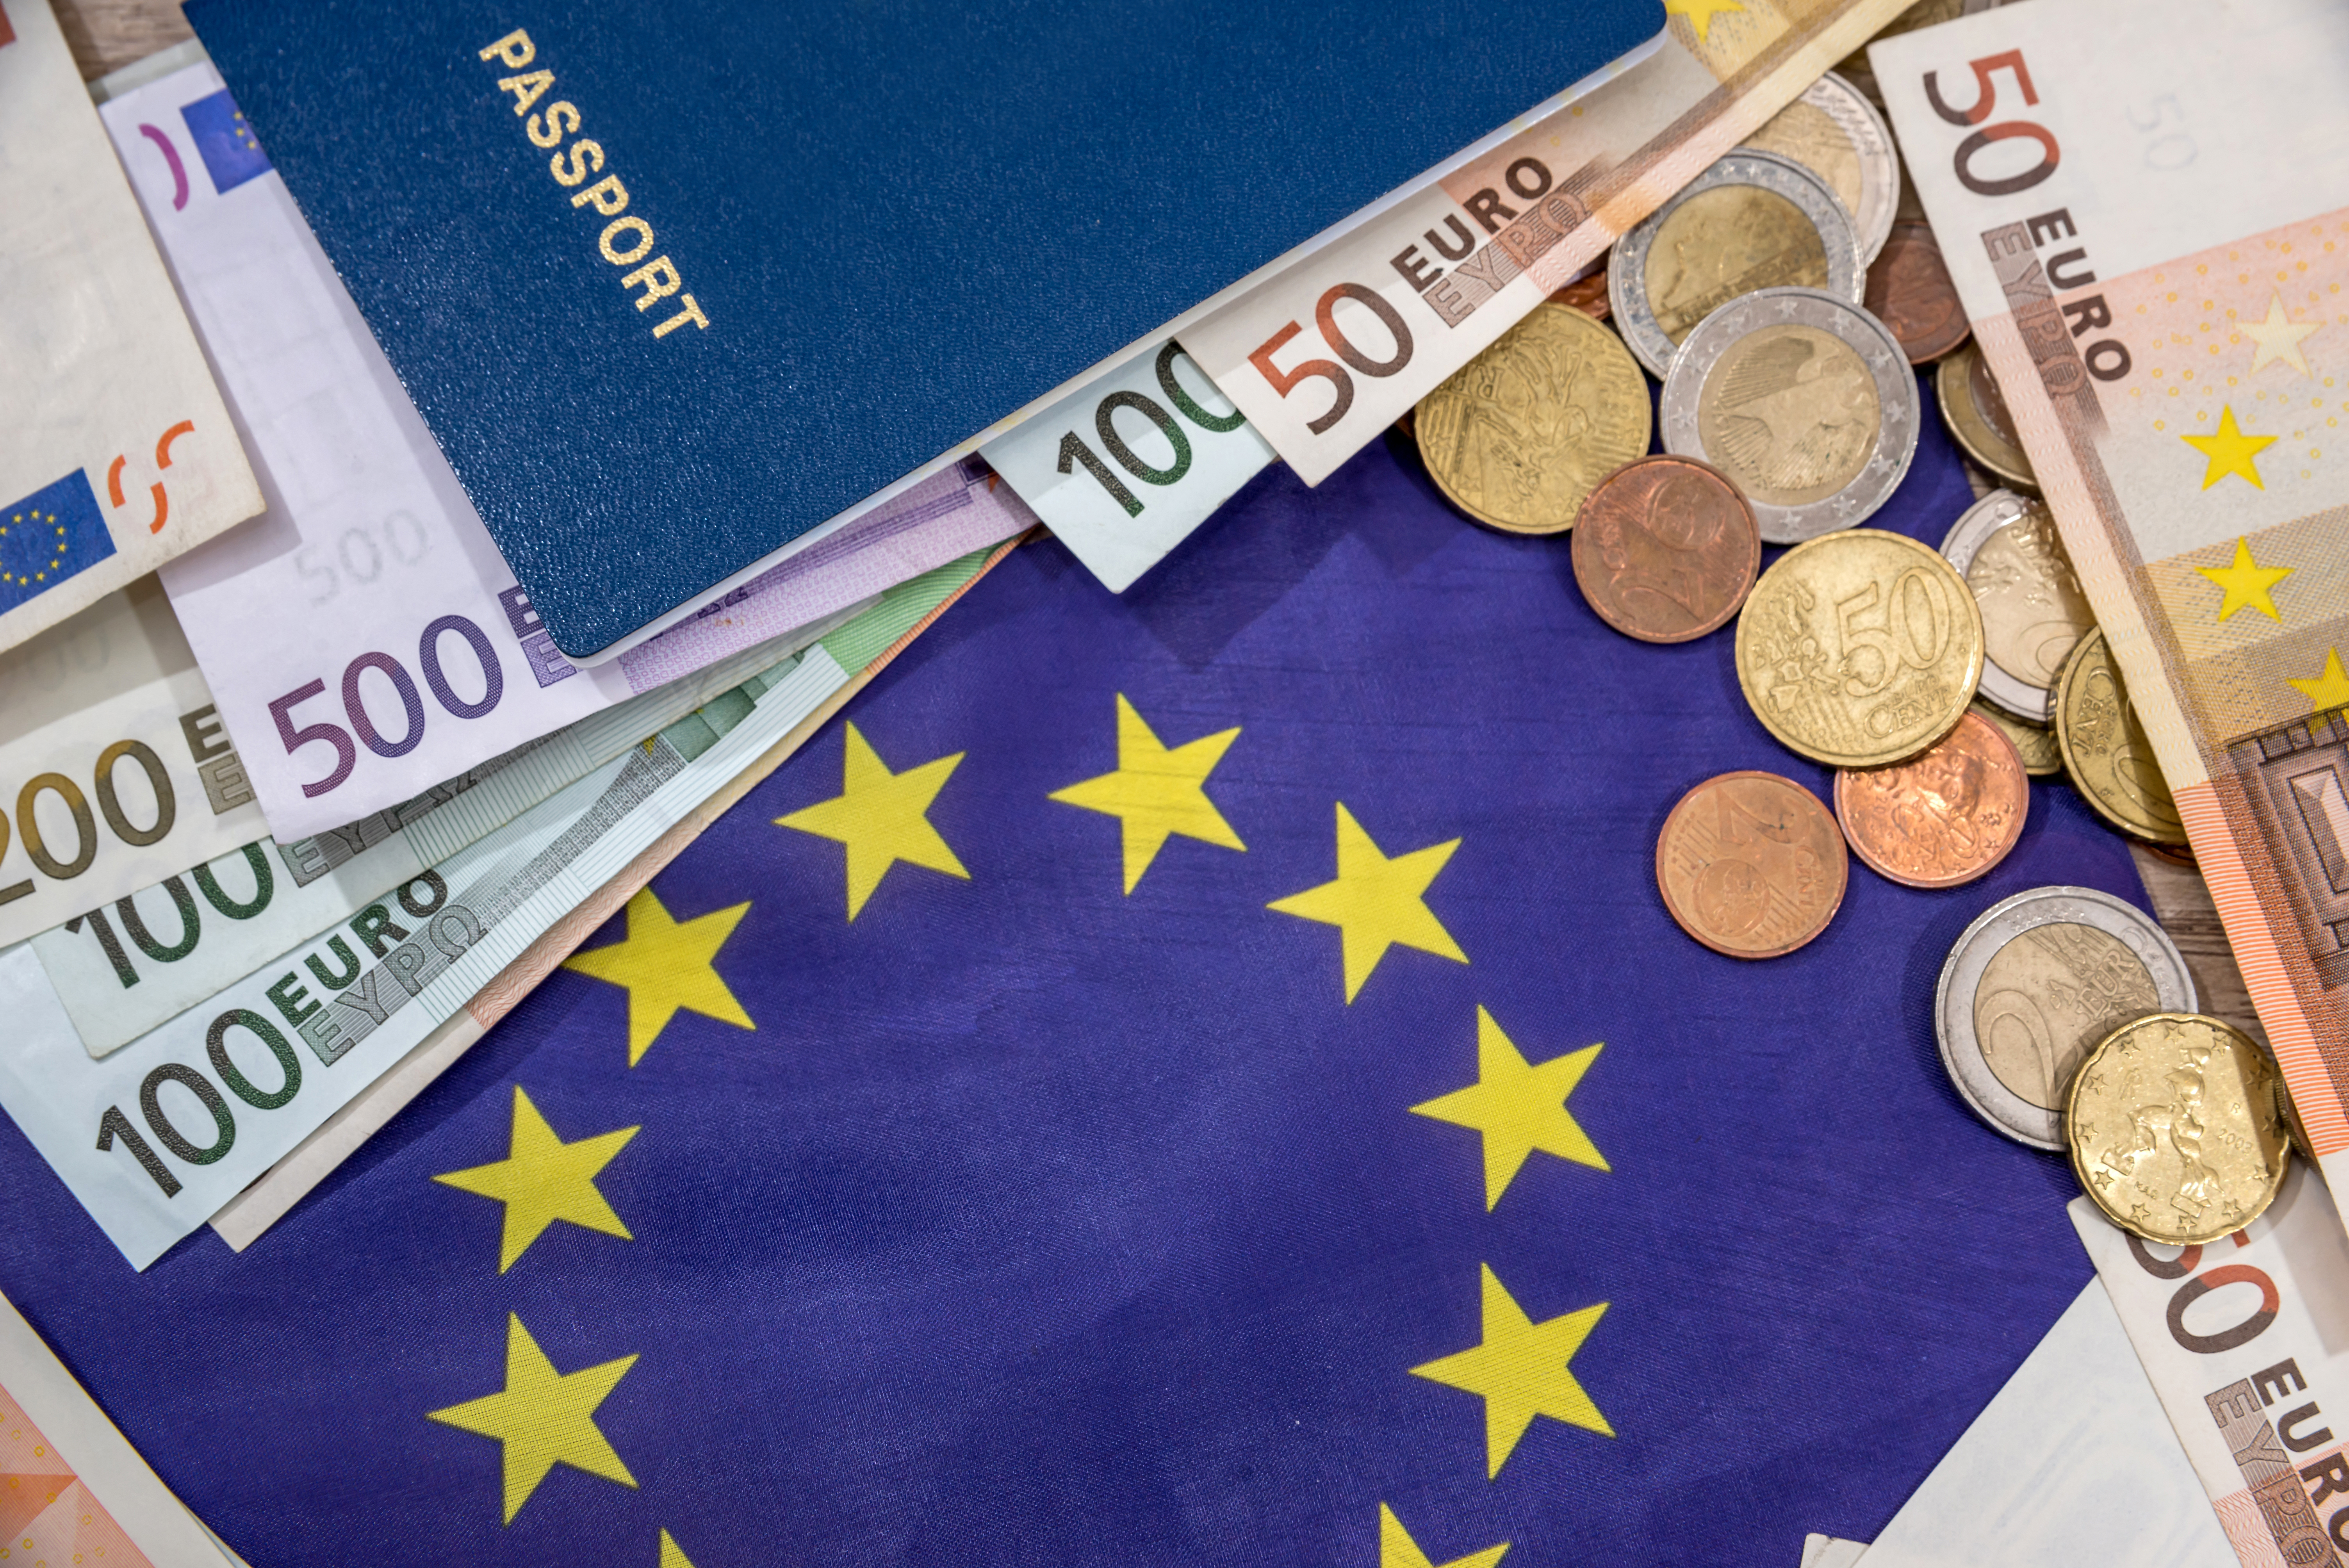 Деньги, флаг и паспорт Евросоюза, гражданство которого можно купить за инвестиции